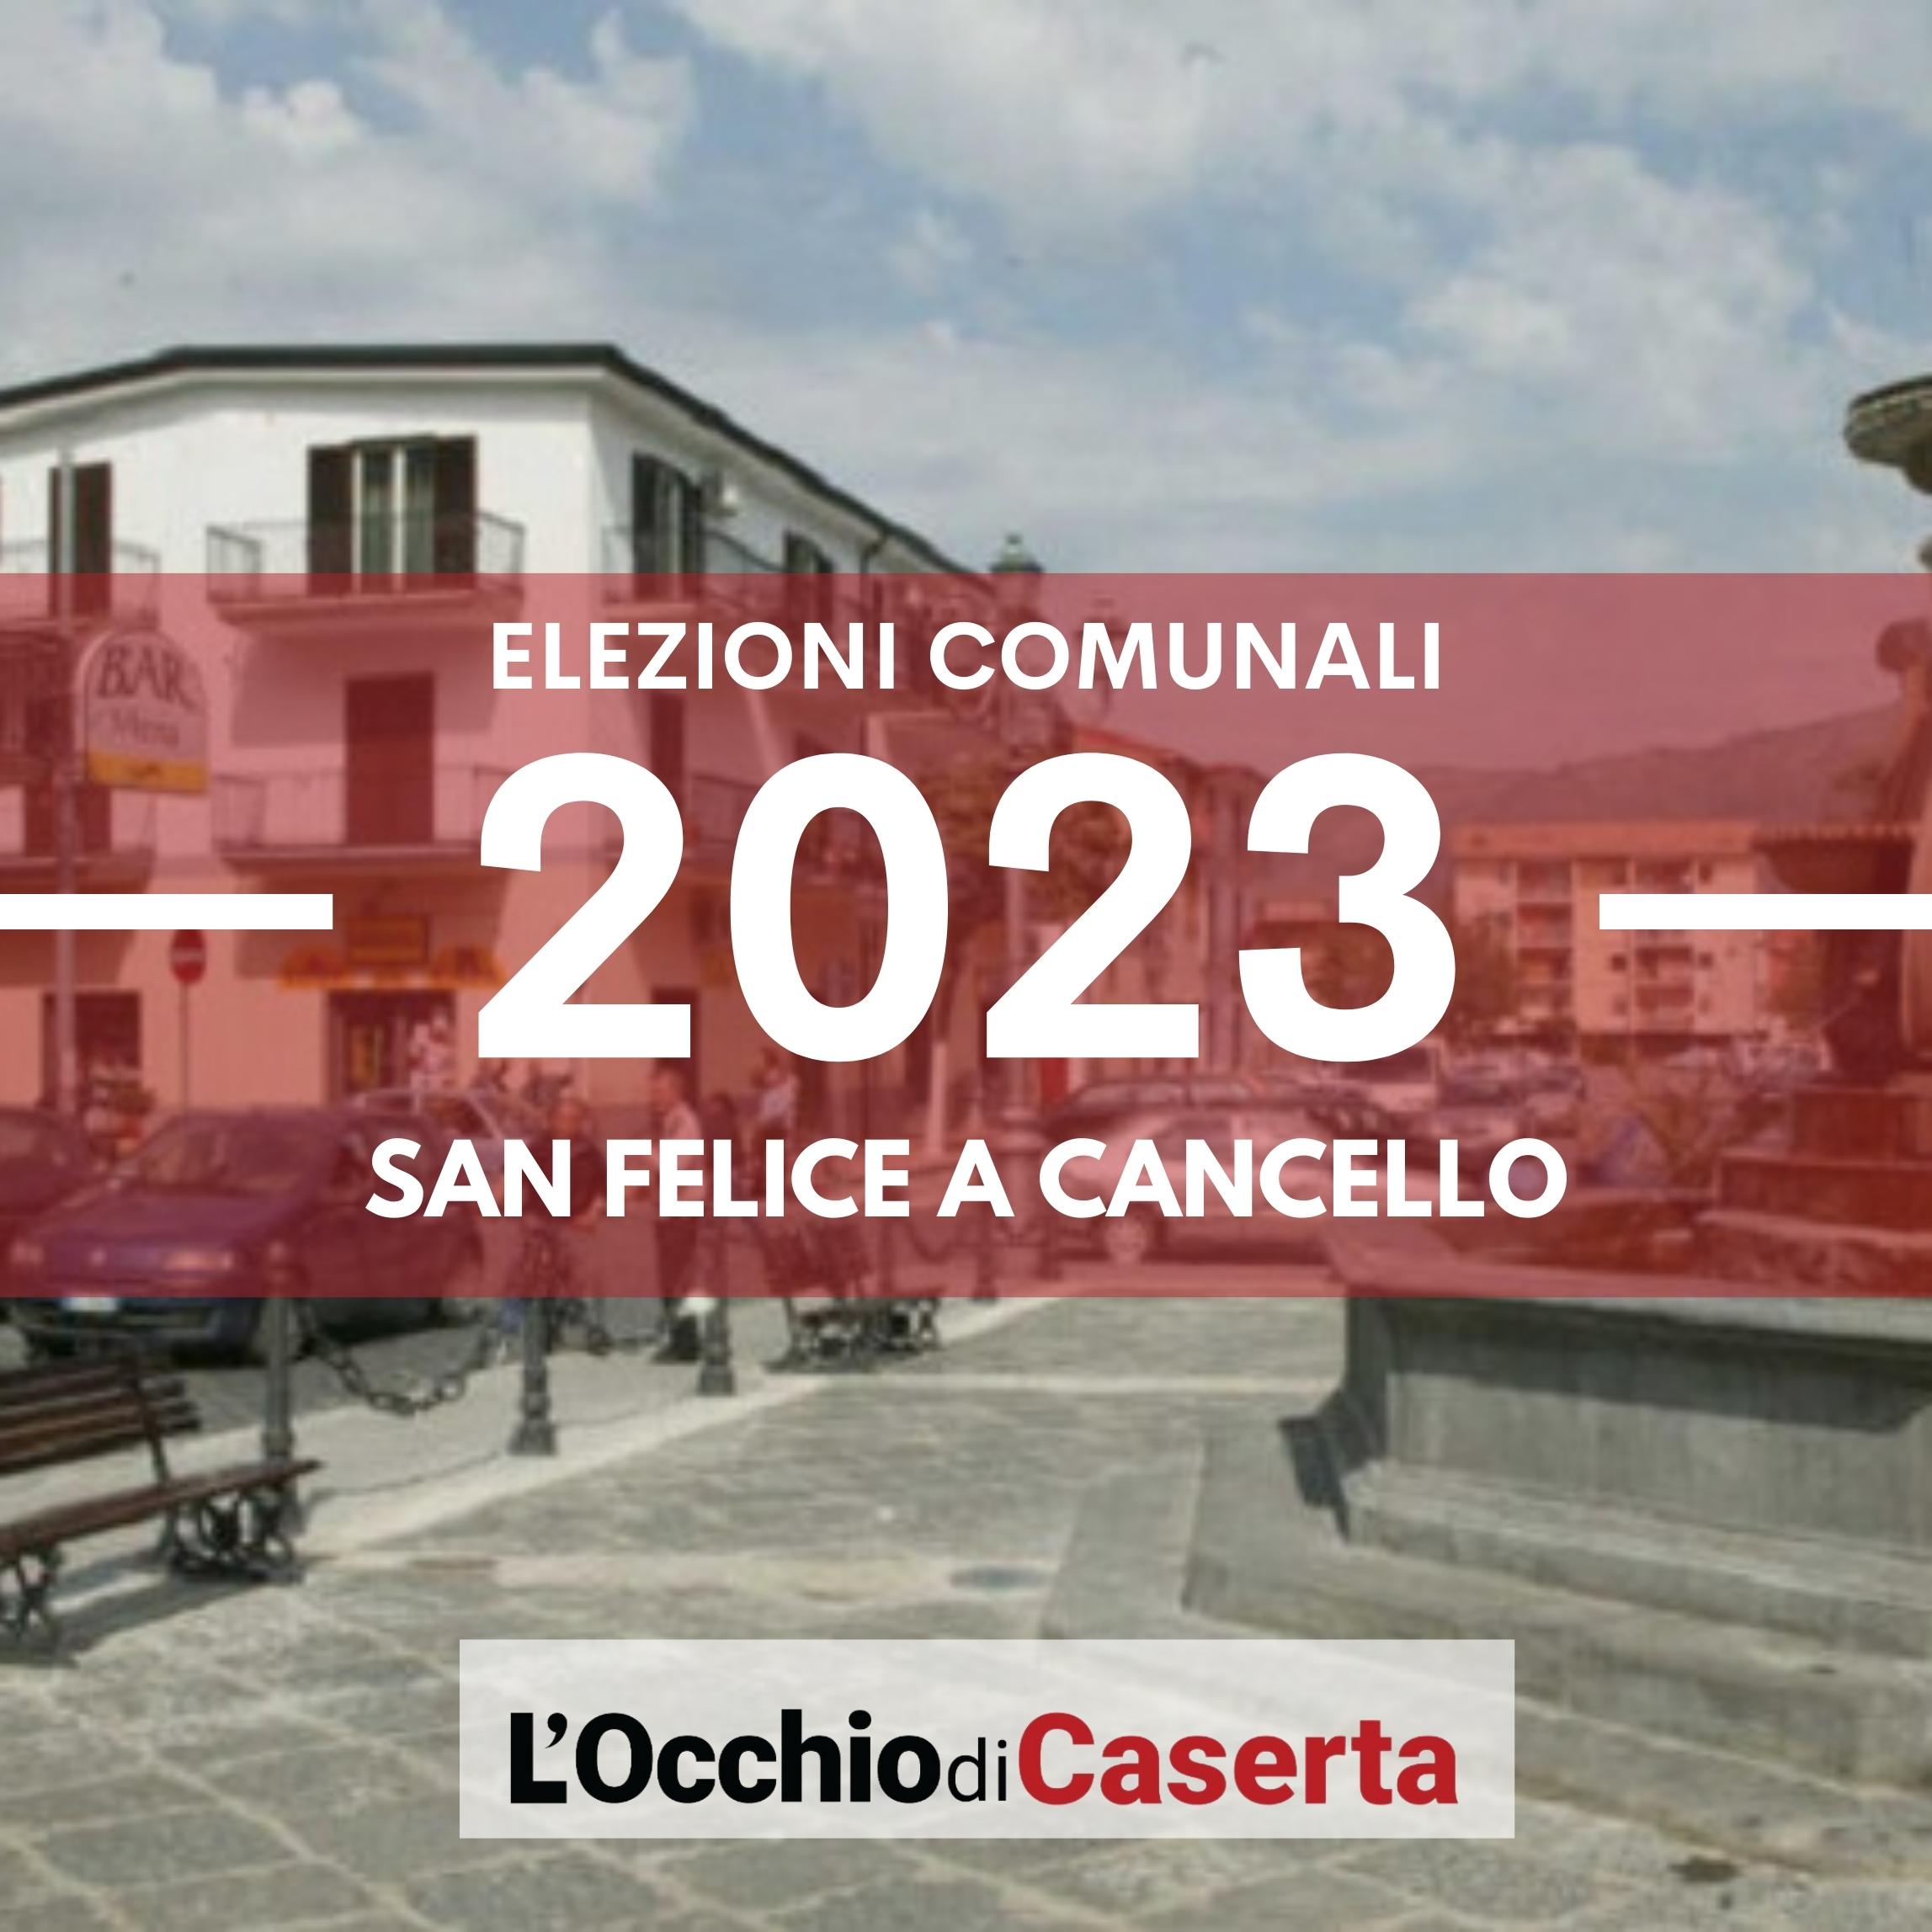 Elezioni comunali 2023 San Felice a Cancello liste candidati